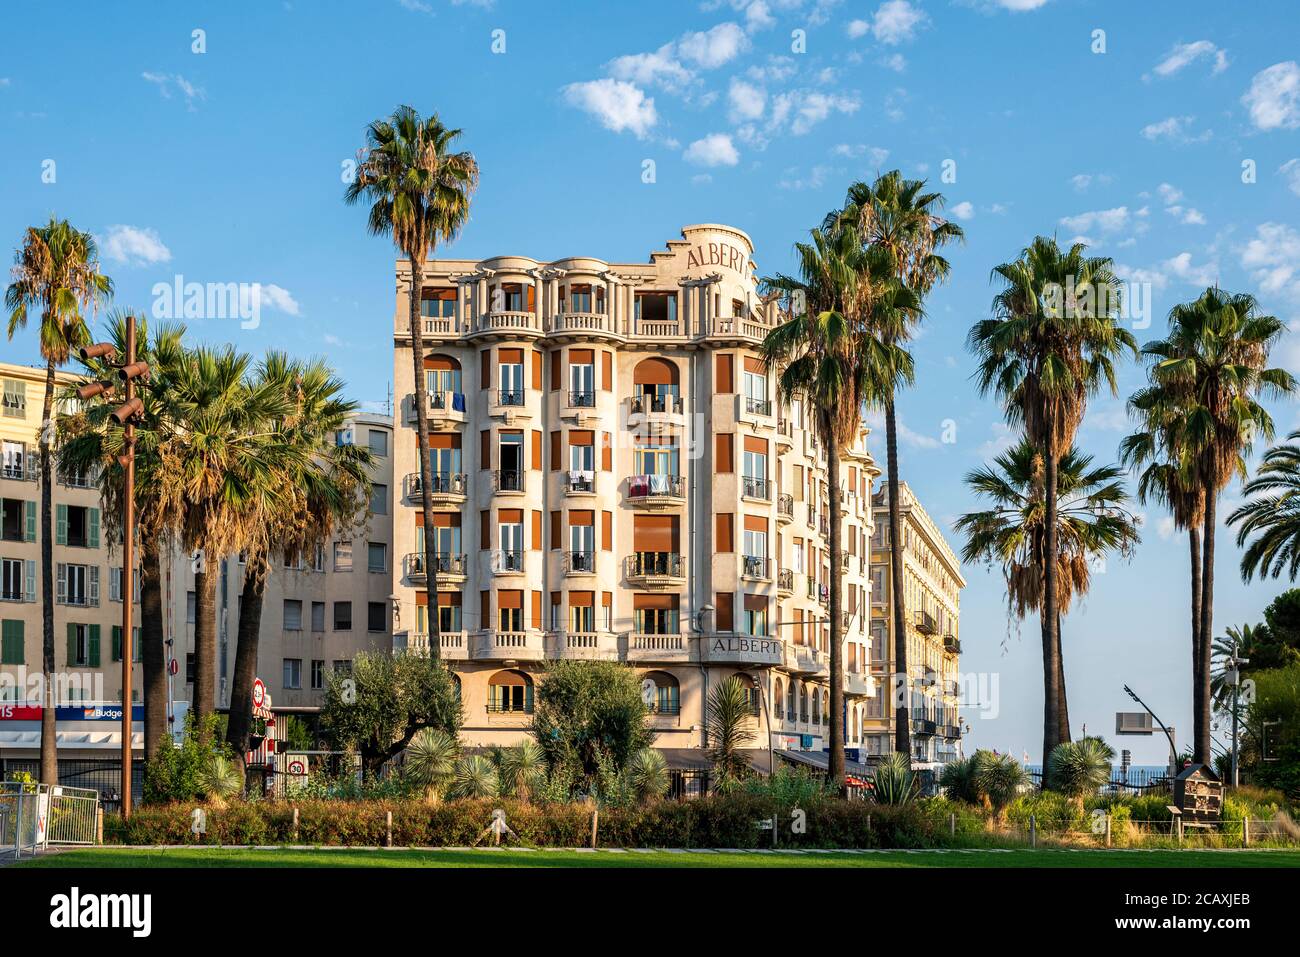 Allgemeine Ansicht des Albert 1er Hotels aus dem öffentlichen Albert 1er Garten in Nizza, Frankreich. Es ist ein 3-Sterne-Hotel und liegt in der Nähe des Meeres. Stockfoto